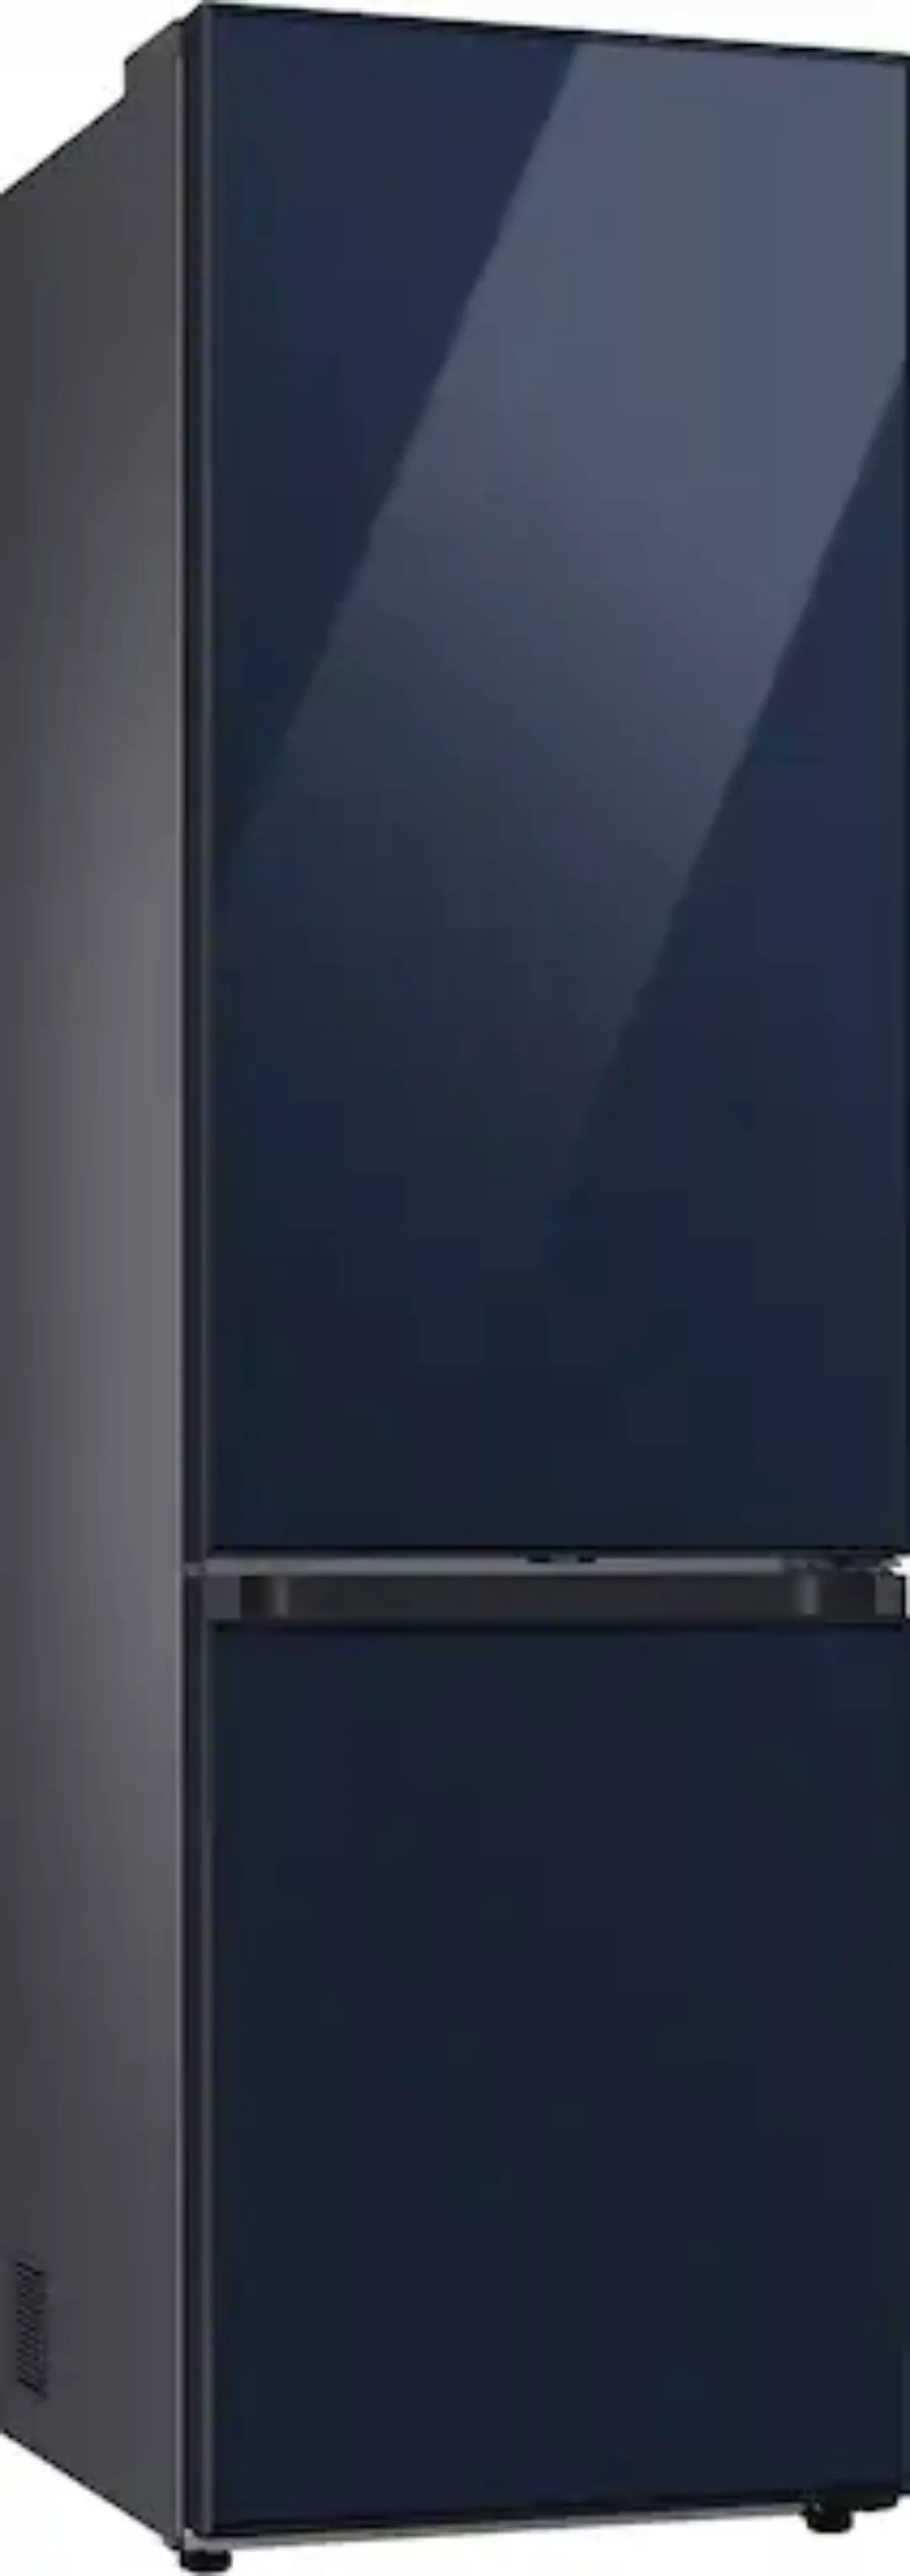 Samsung Kühl-/Gefrierkombination »RL38C6B6C41«, RL38C6B6C41, 203 cm hoch, 5 günstig online kaufen